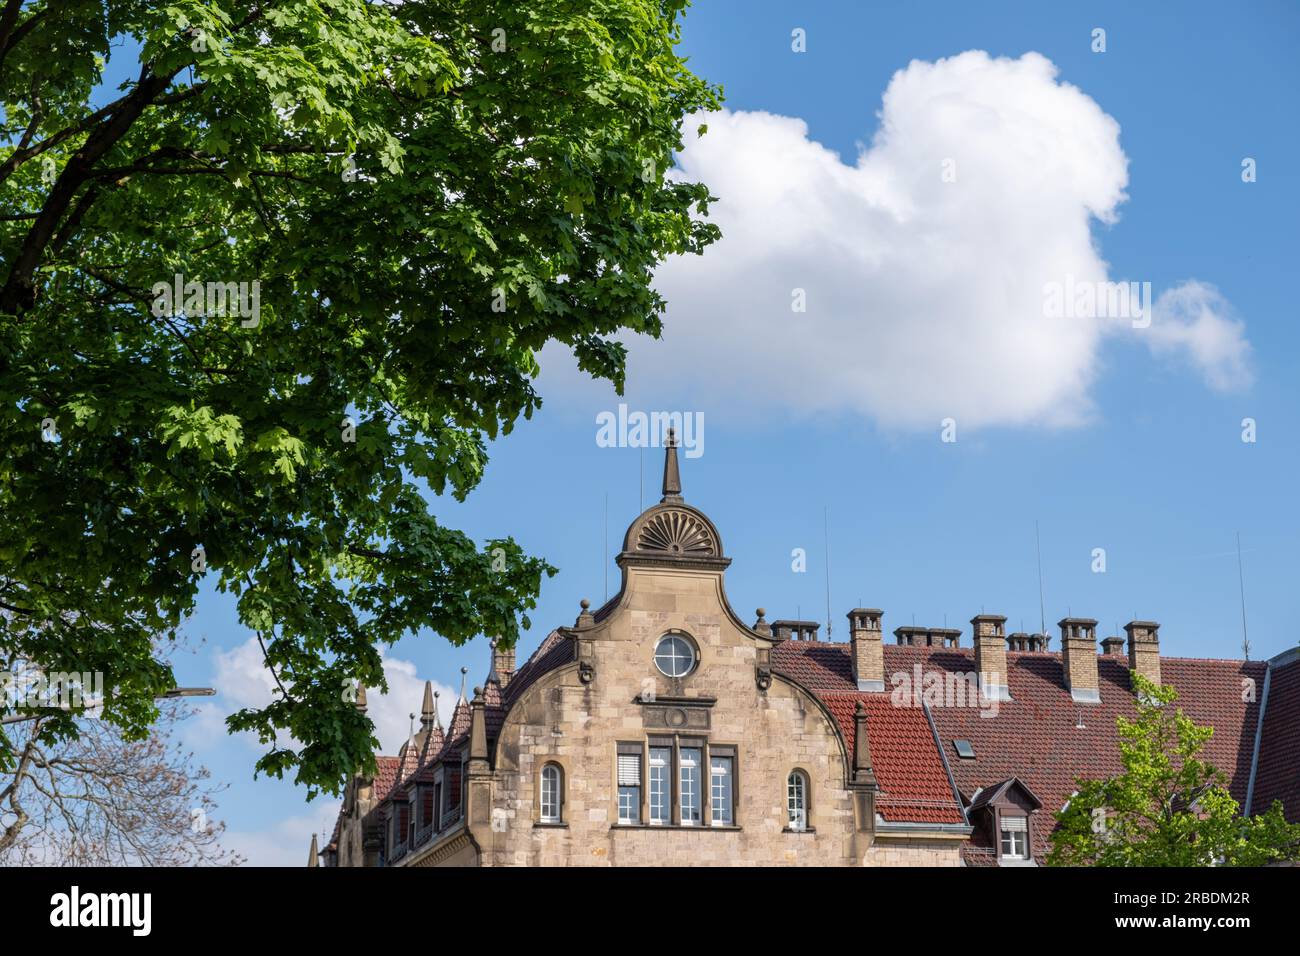 Allemagne, ville de Heidelberg. Vue du bâtiment de toit de tuile, avec beaucoup de cheminée et partie d'extrémité supérieure compliquée. Journée ensoleillée, ciel nuageux, arbre. Banque D'Images